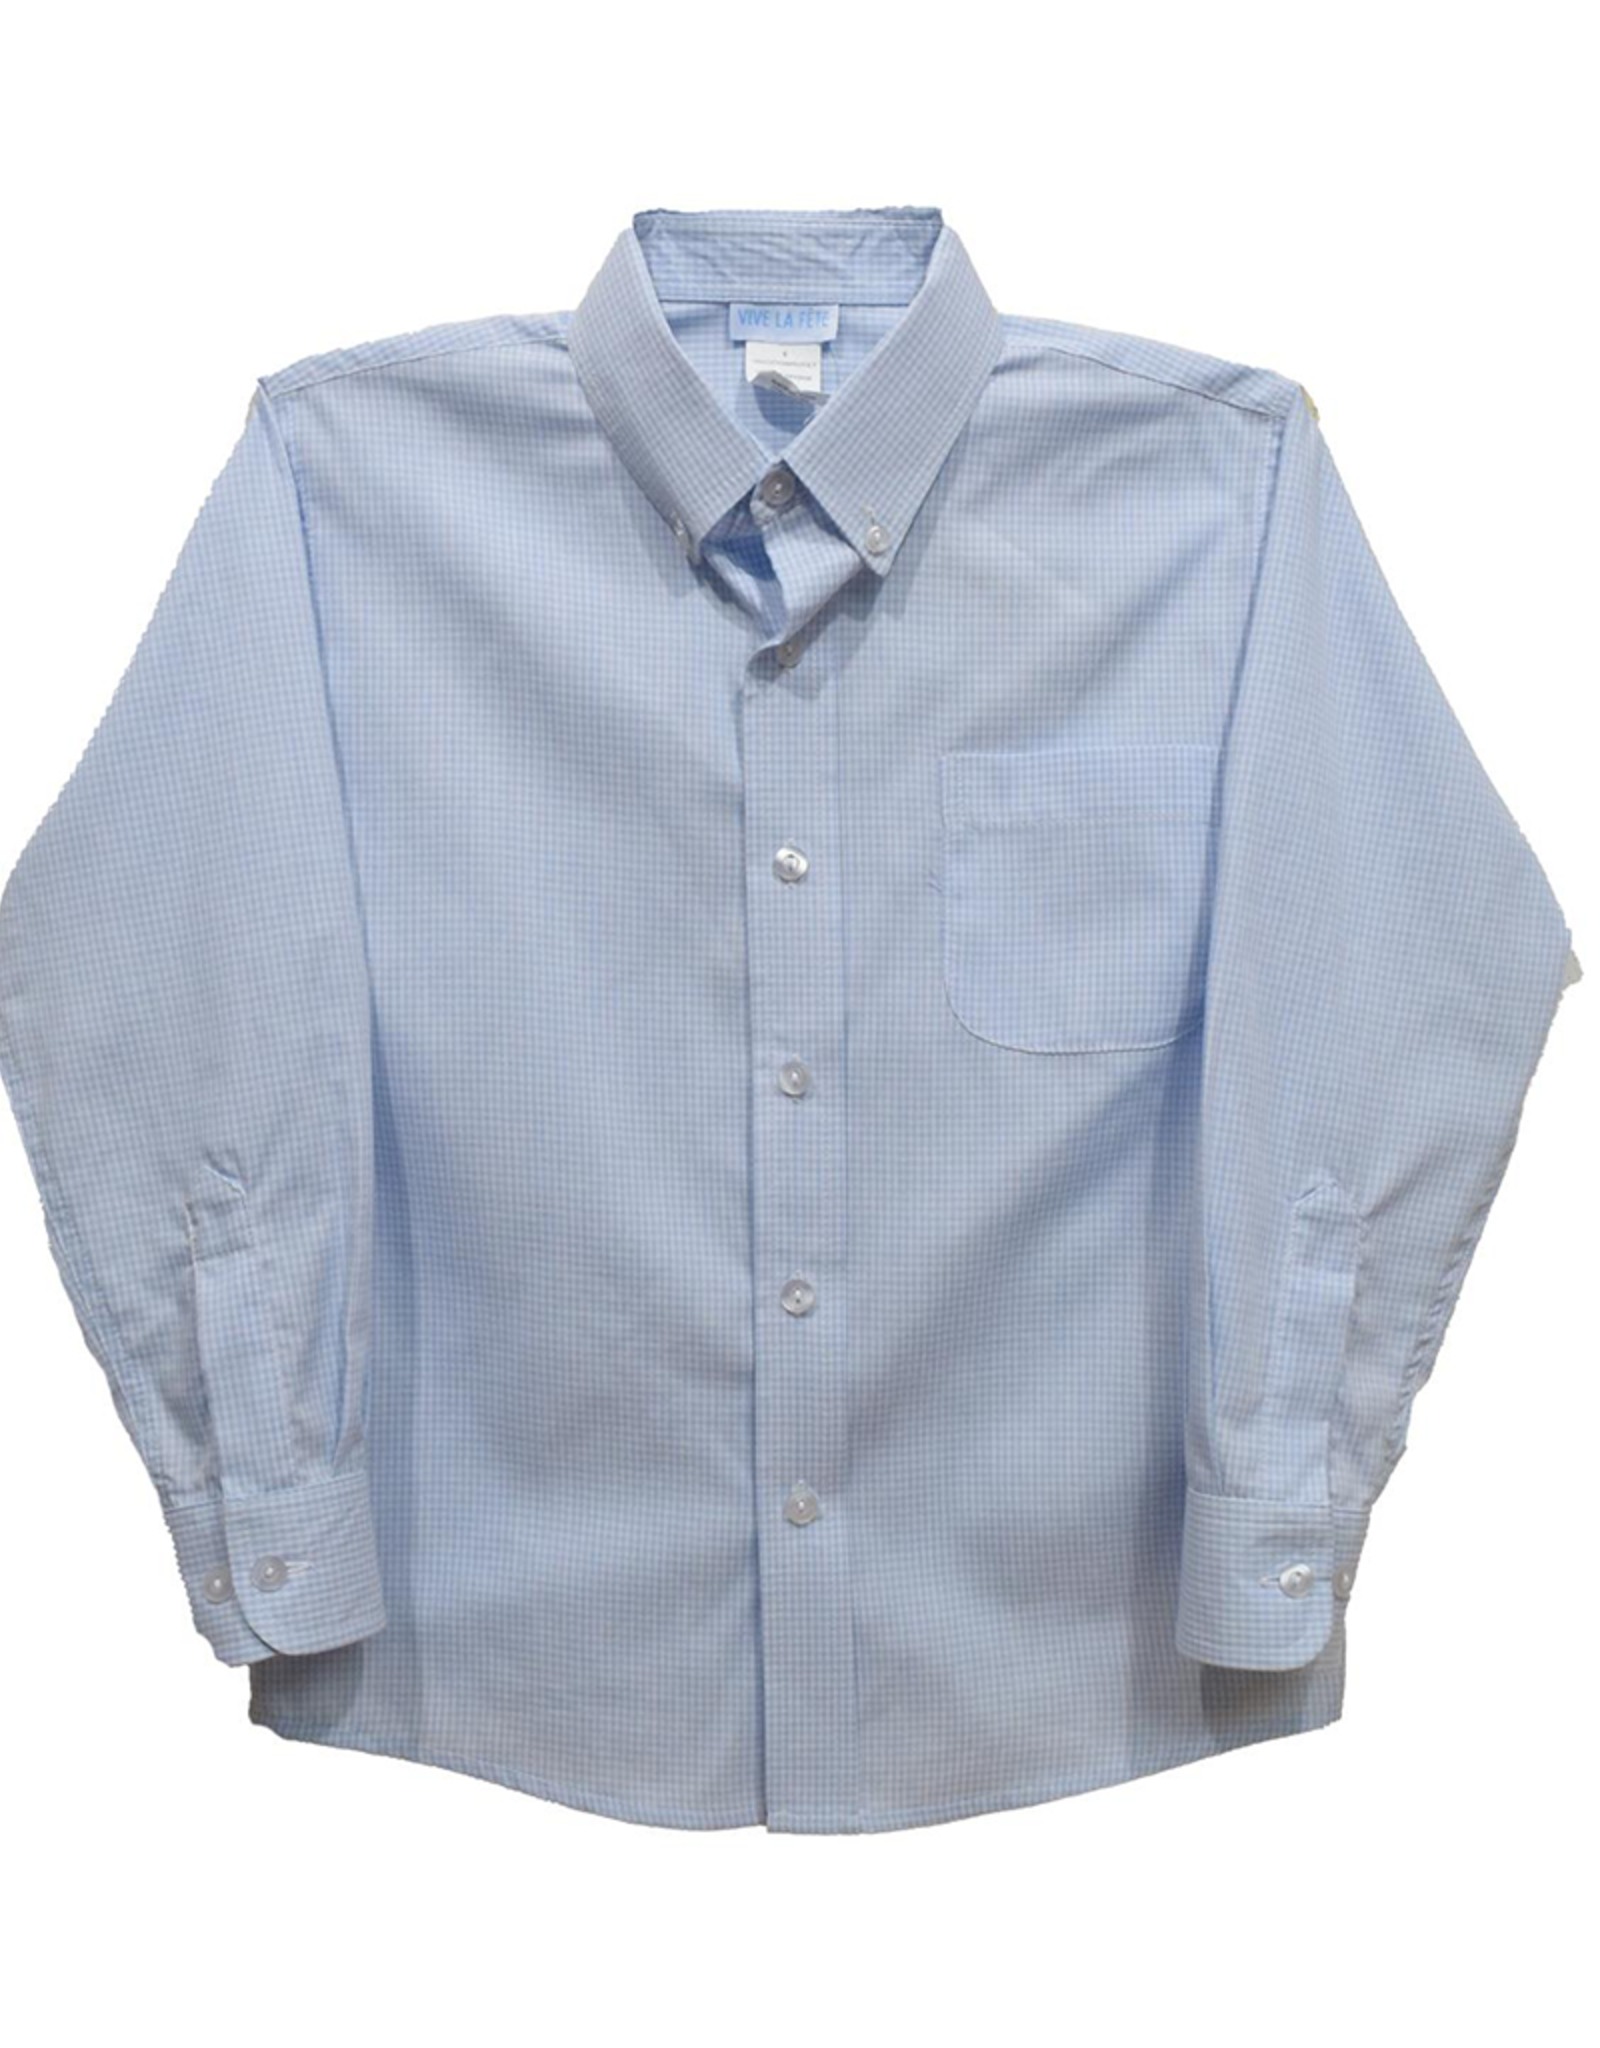 Vive la Fete VFS24 Light Blue Gingham Button Down Shirt